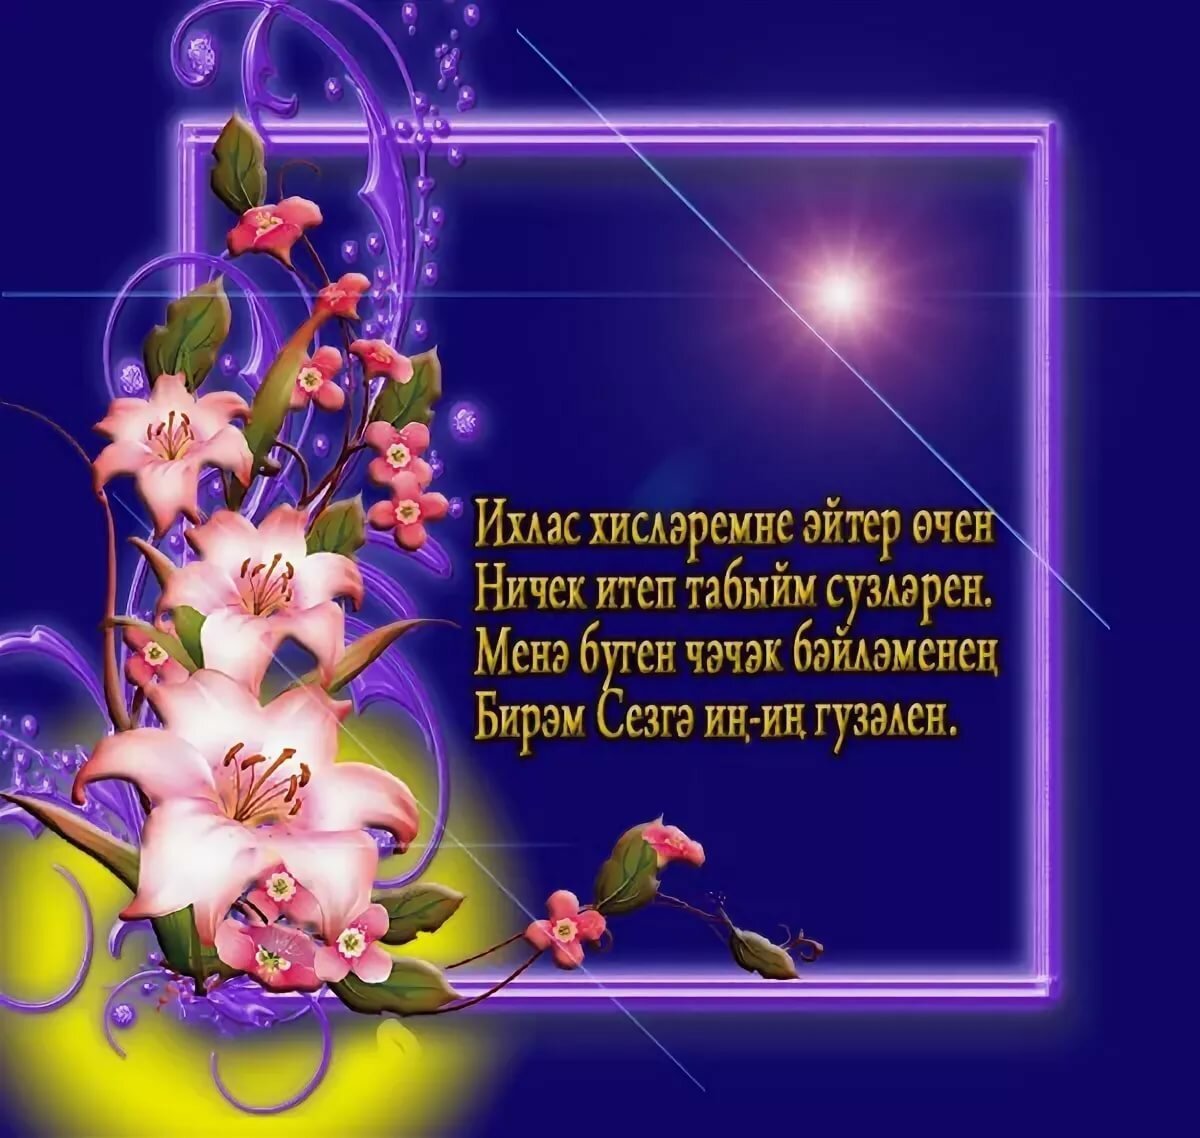 Создайте впечатляющие обои на татарском для поздравления с Днем матери